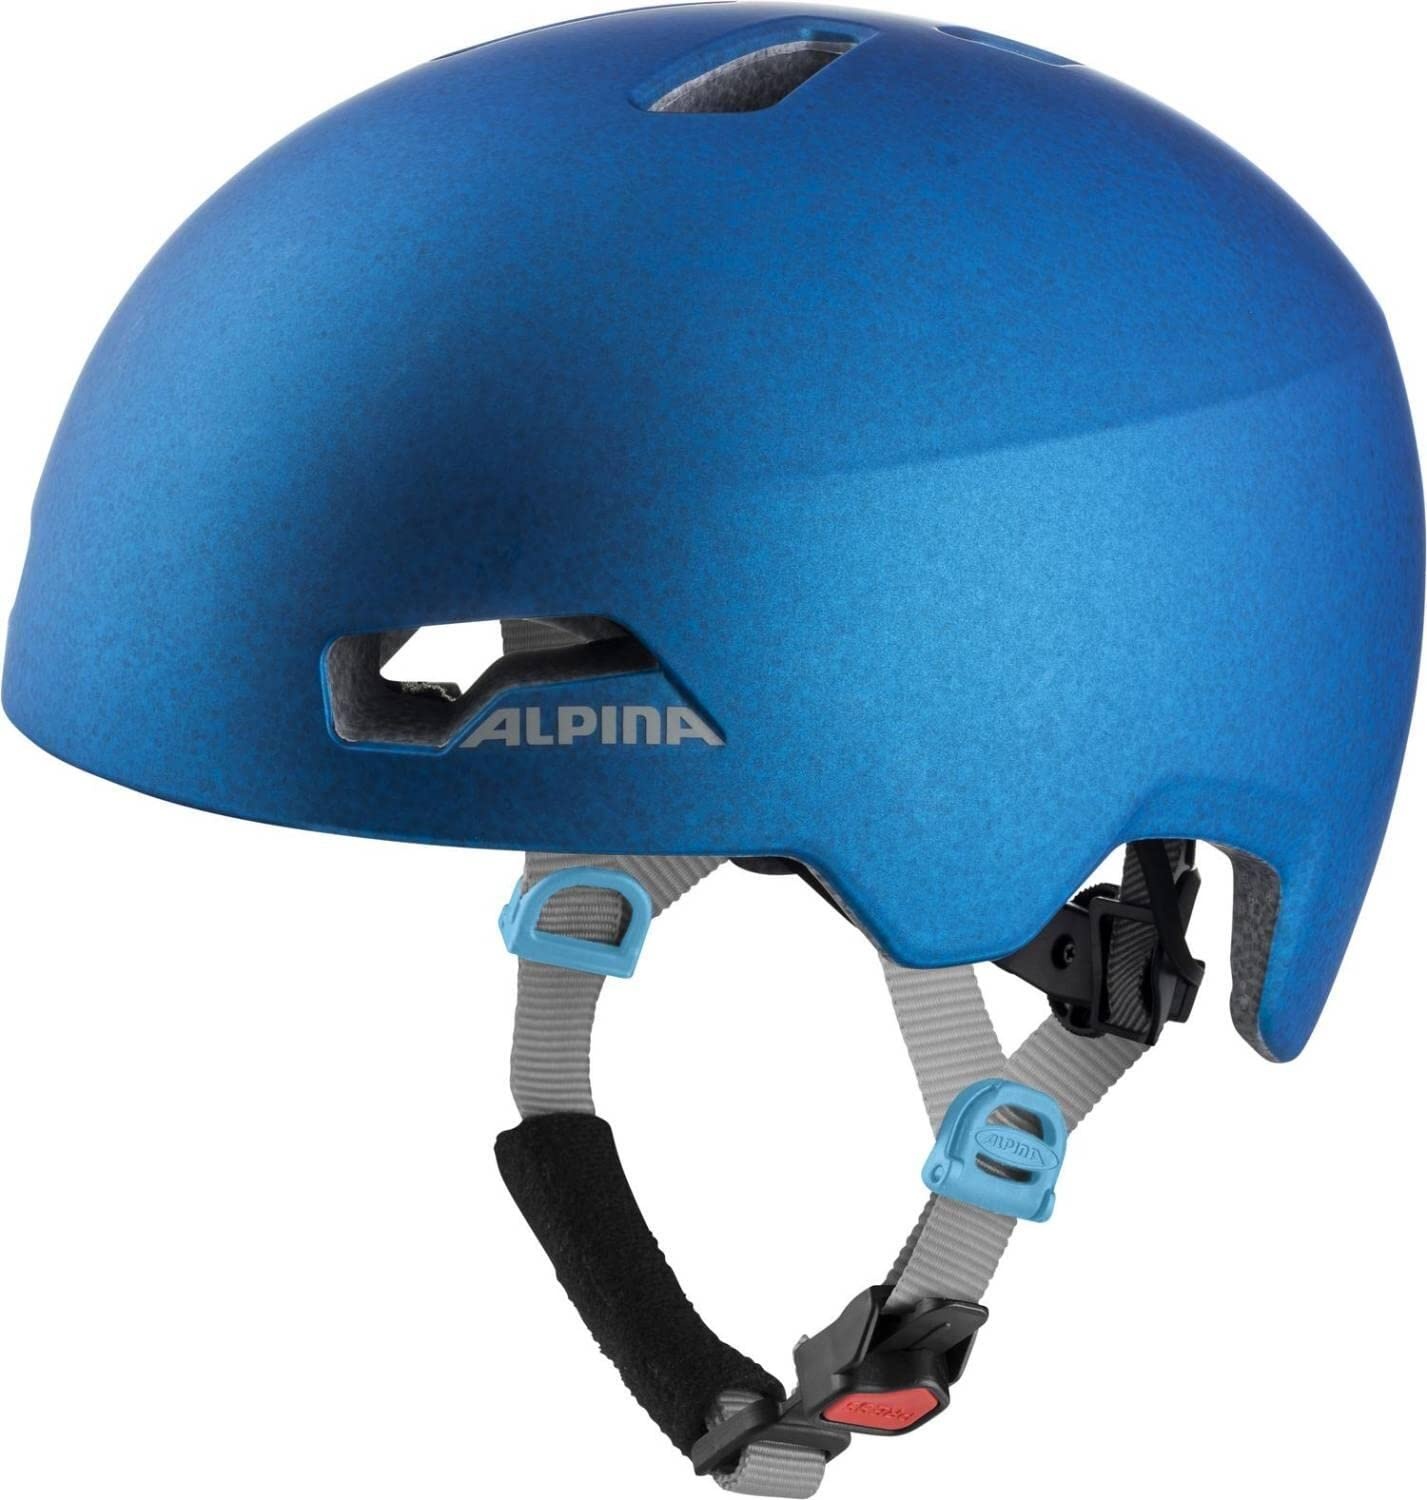 ALPINA HACKNEY - Leichter, Bruchfester & Optimal Klimatisierter Fahrradhelm Mit Nachrüstbarem LED Für Kinder, transculent blue, 47-51 cm